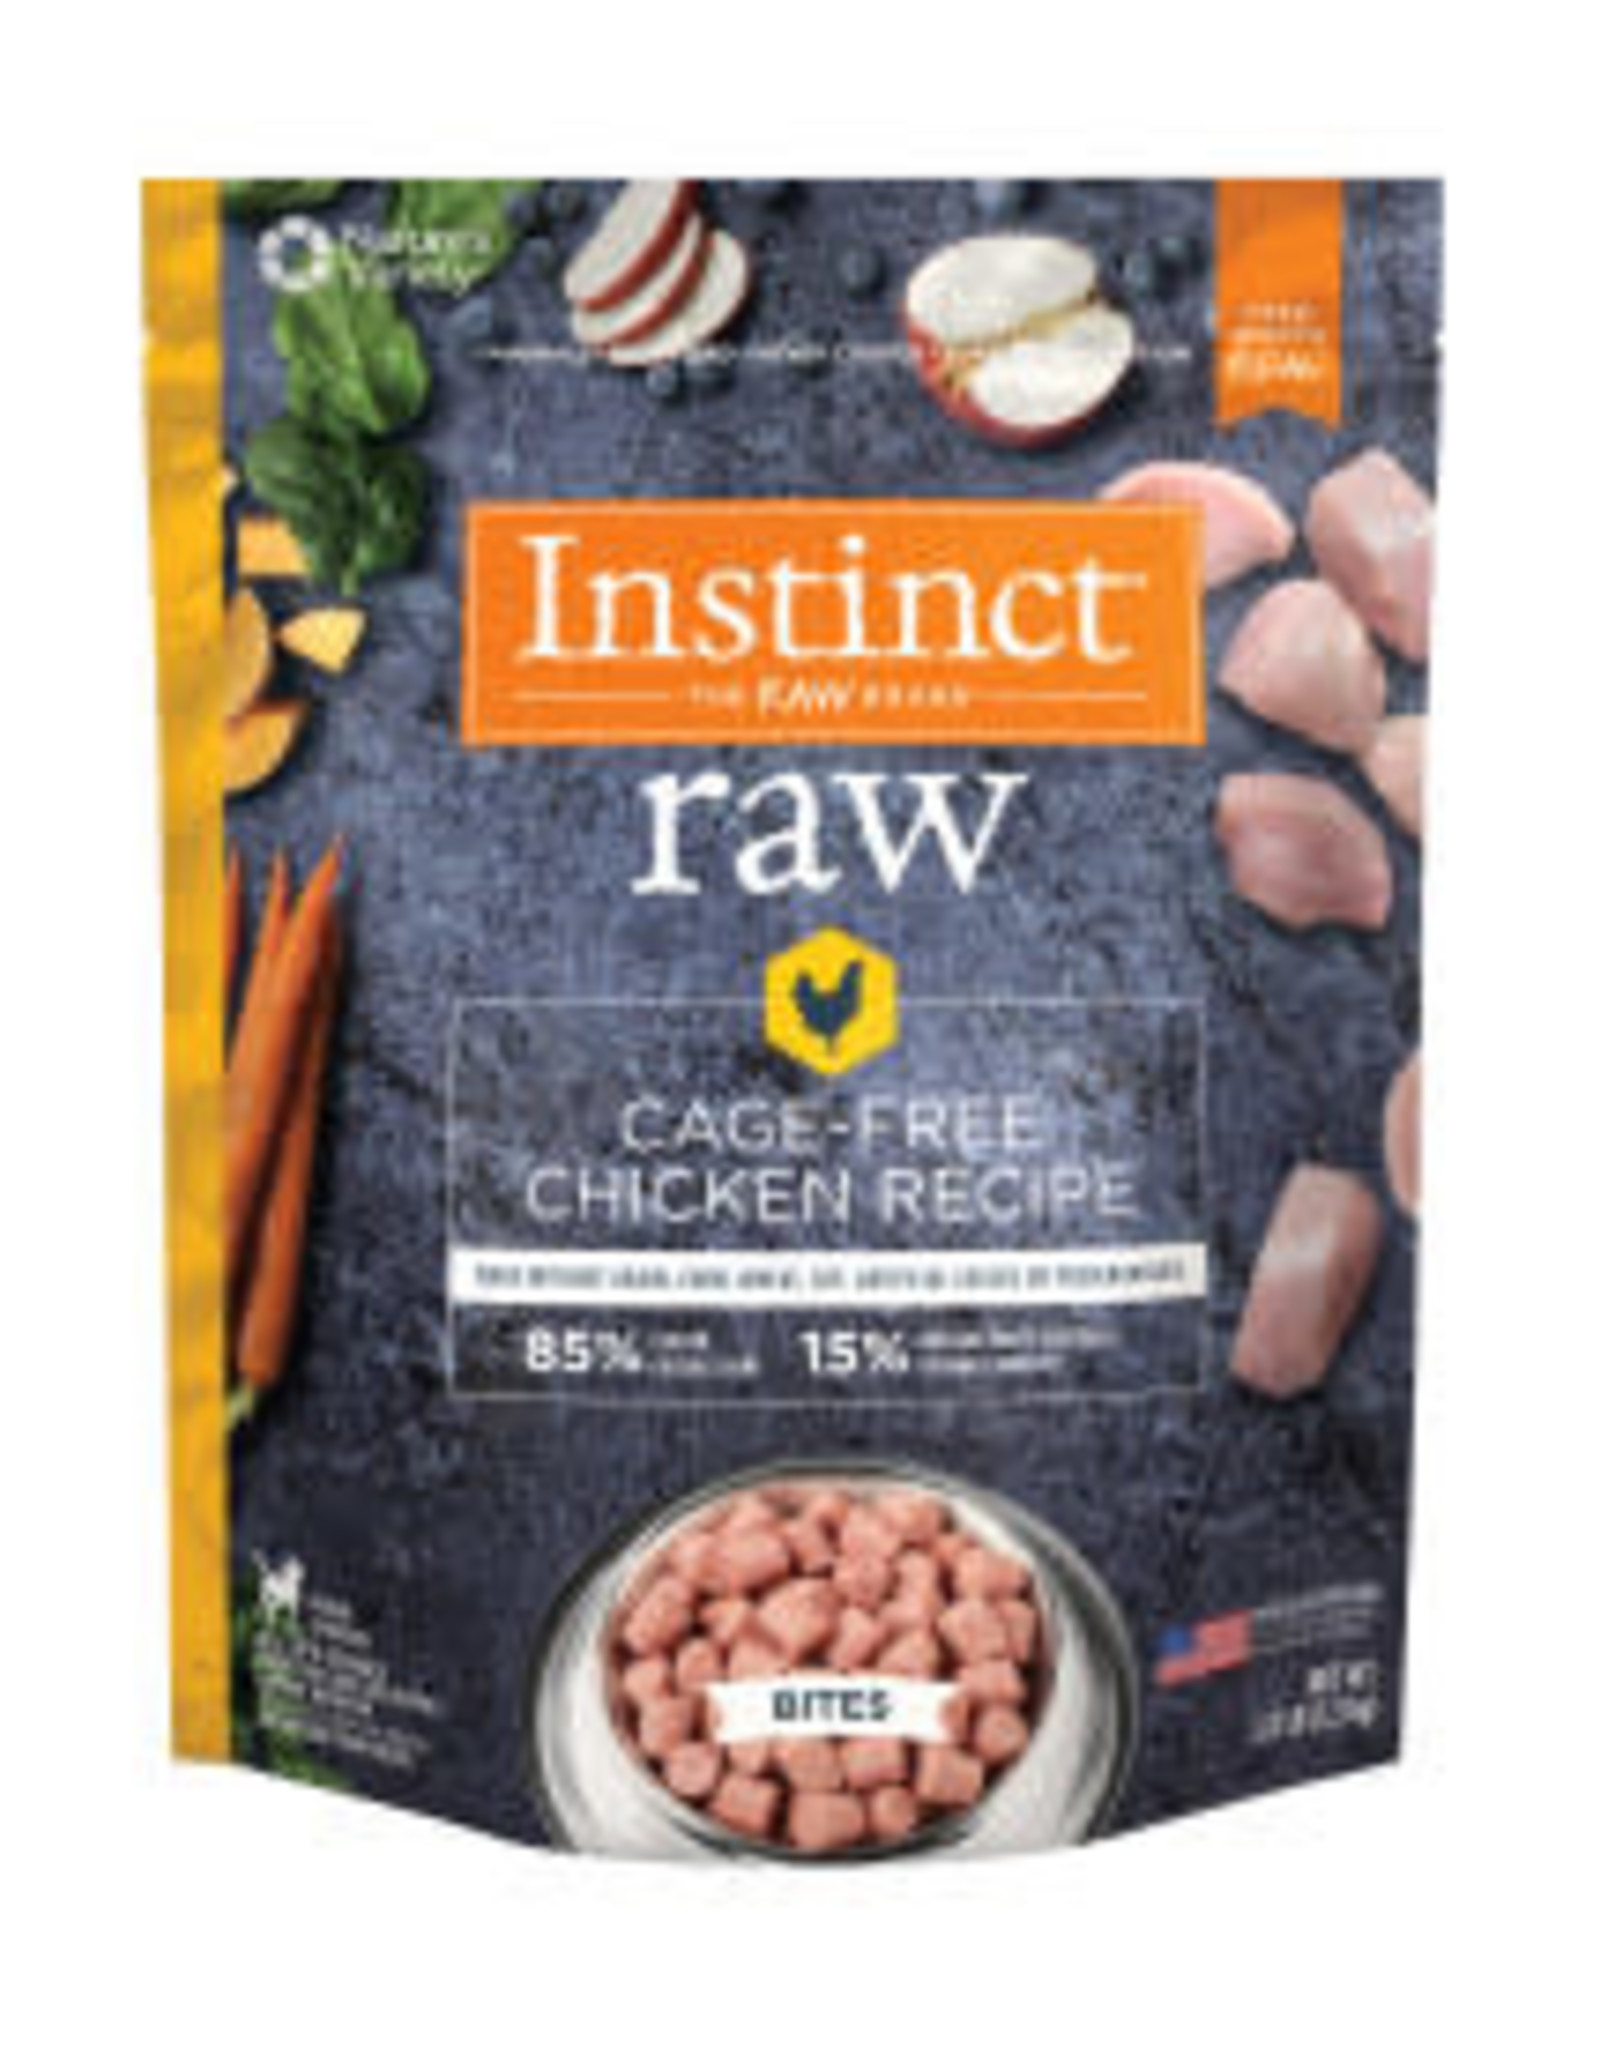 NATURE'S VARIETY Instinct Raw Frozen Chicken Bites Dog Food-Grain Free